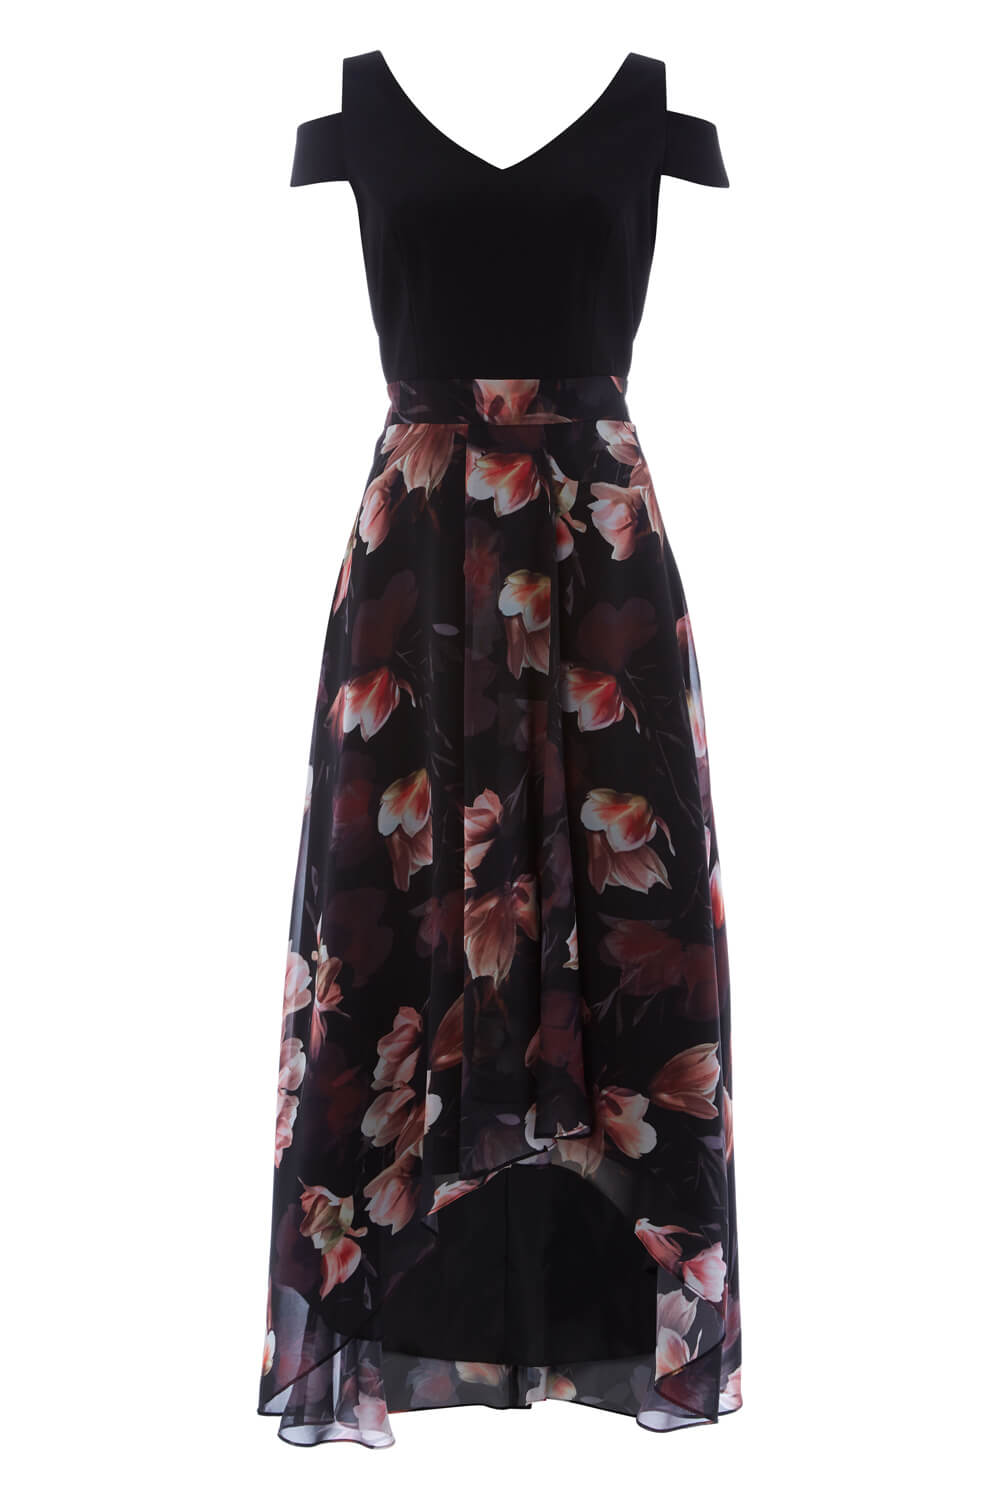 Floral Print Cold Shoulder Maxi Dress in Plum - Roman Originals UK